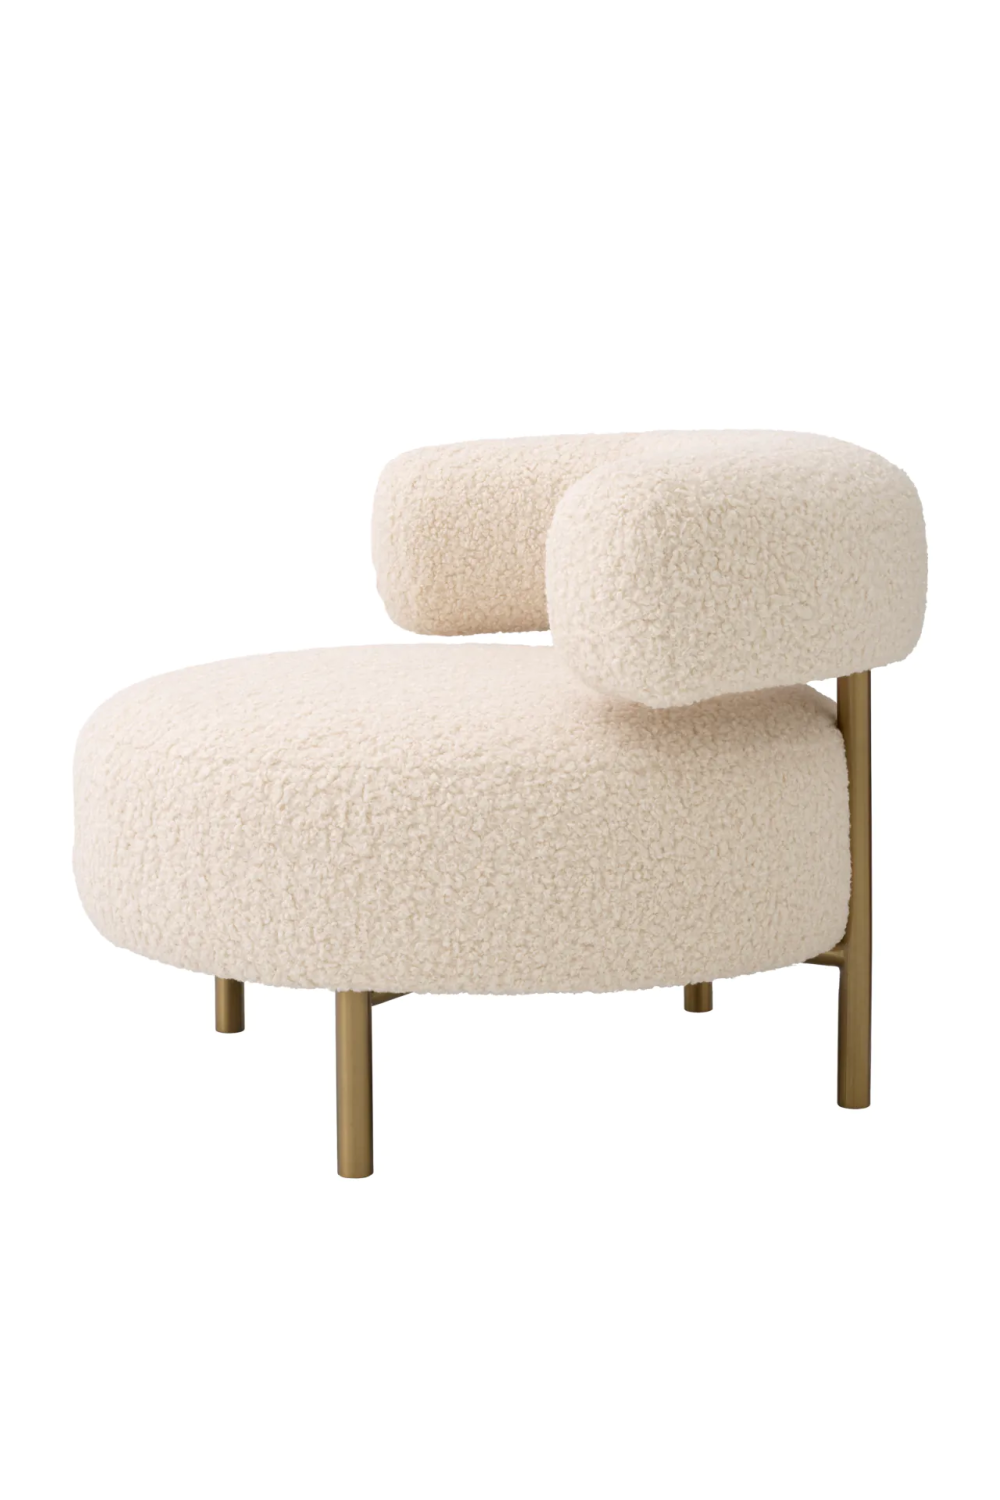 Curved Modern Lounge Chair | Eichholtz Thompson | Oroa.com